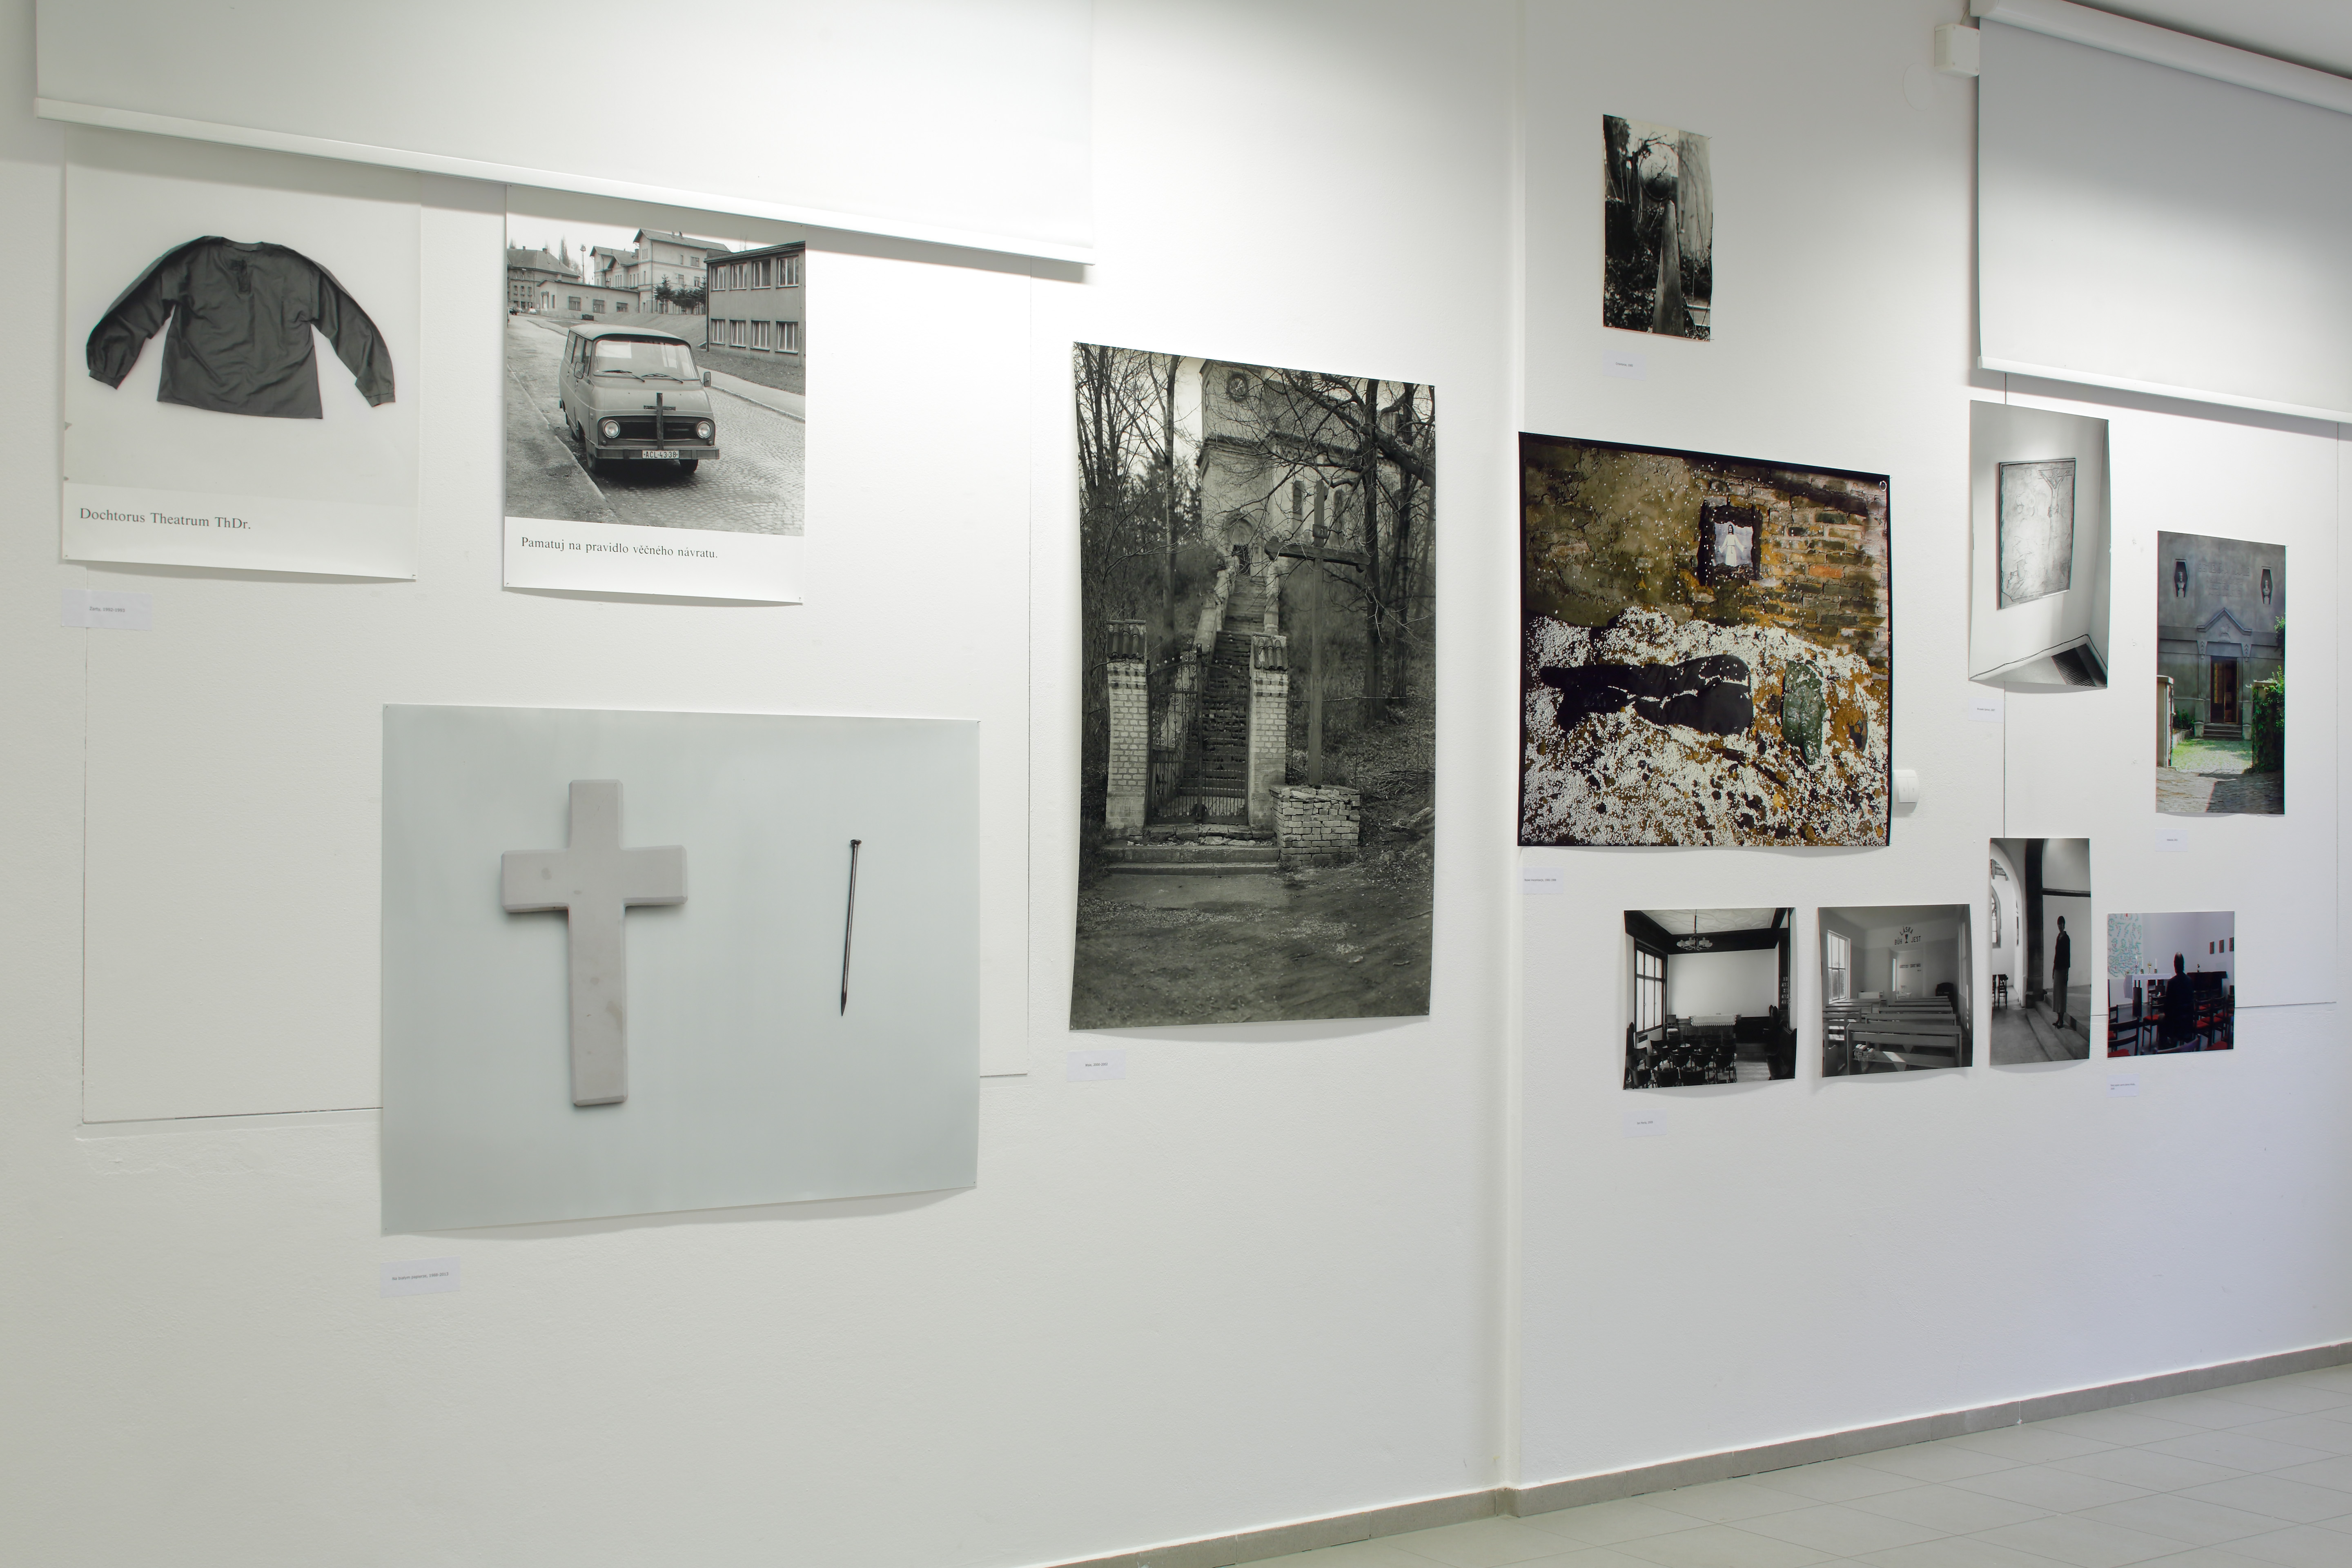 Lukas Jasansky, Martin Polak, Kościoły, kościoły, widok wystawy